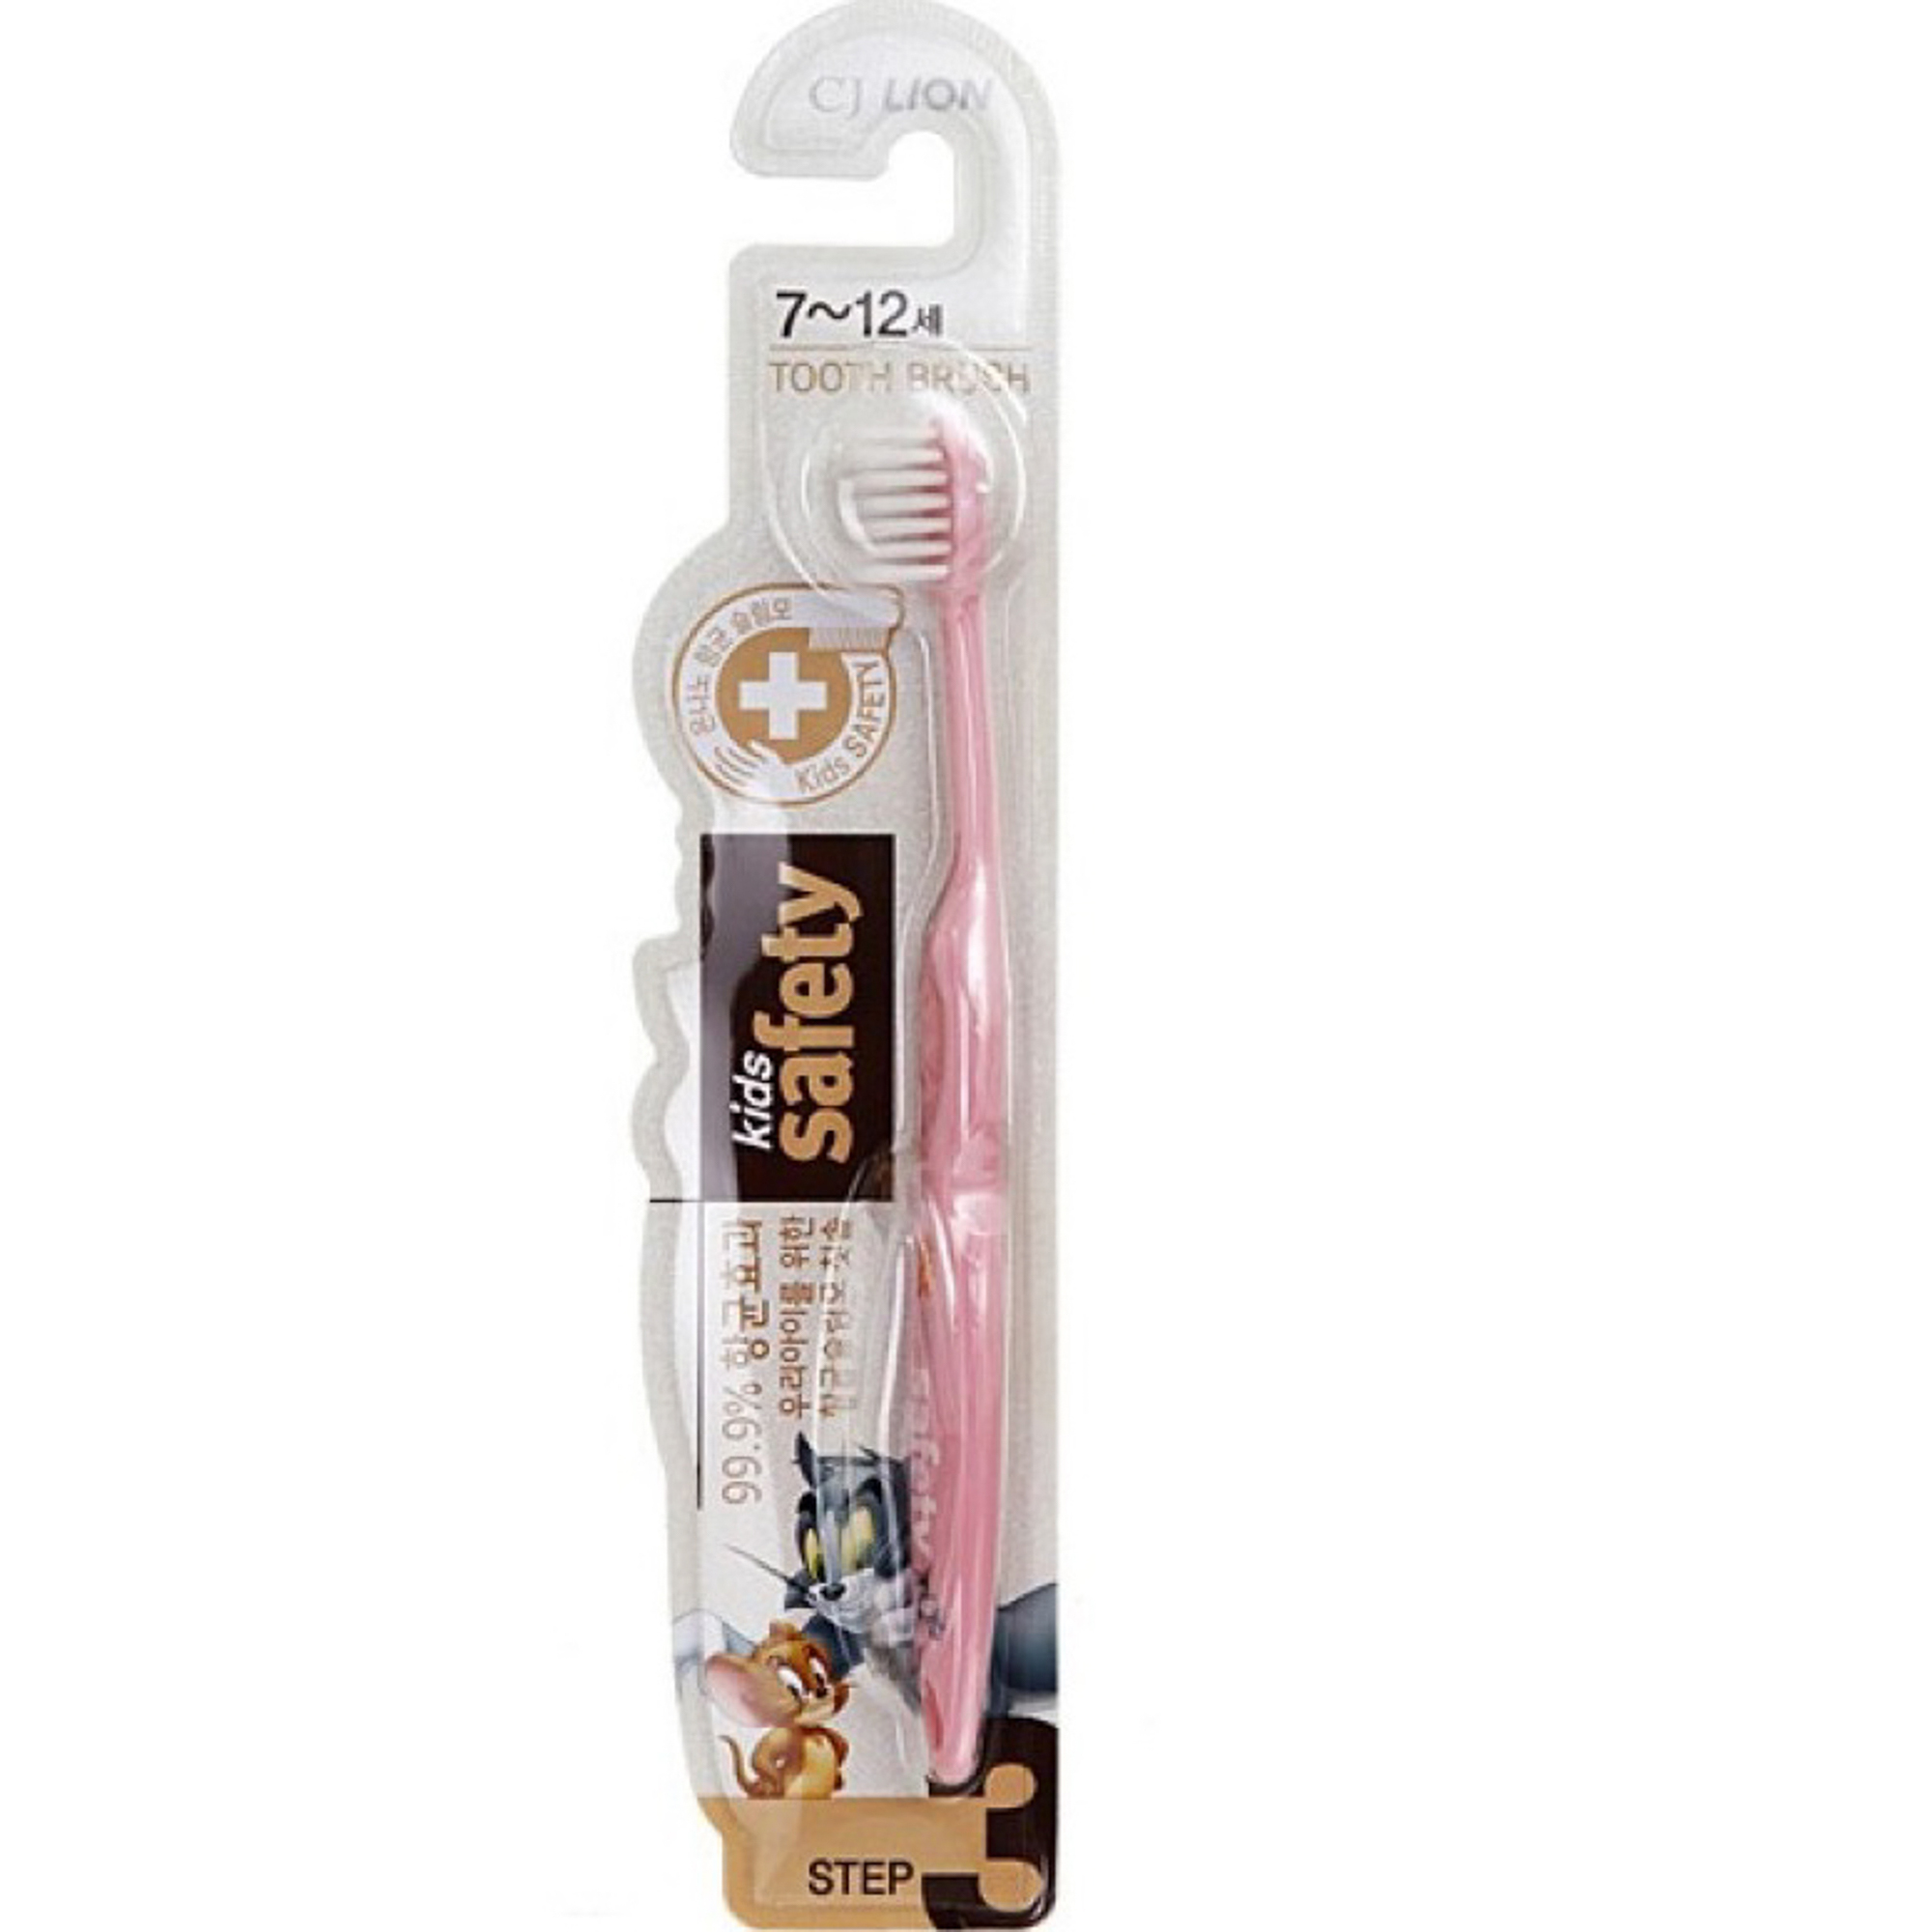 Зубная щетка детская CJ Lion Kids Safe с нано-серебряным покрытием от 7лет расческа детская массажная щетка для волос от 0 мес бирюзовый